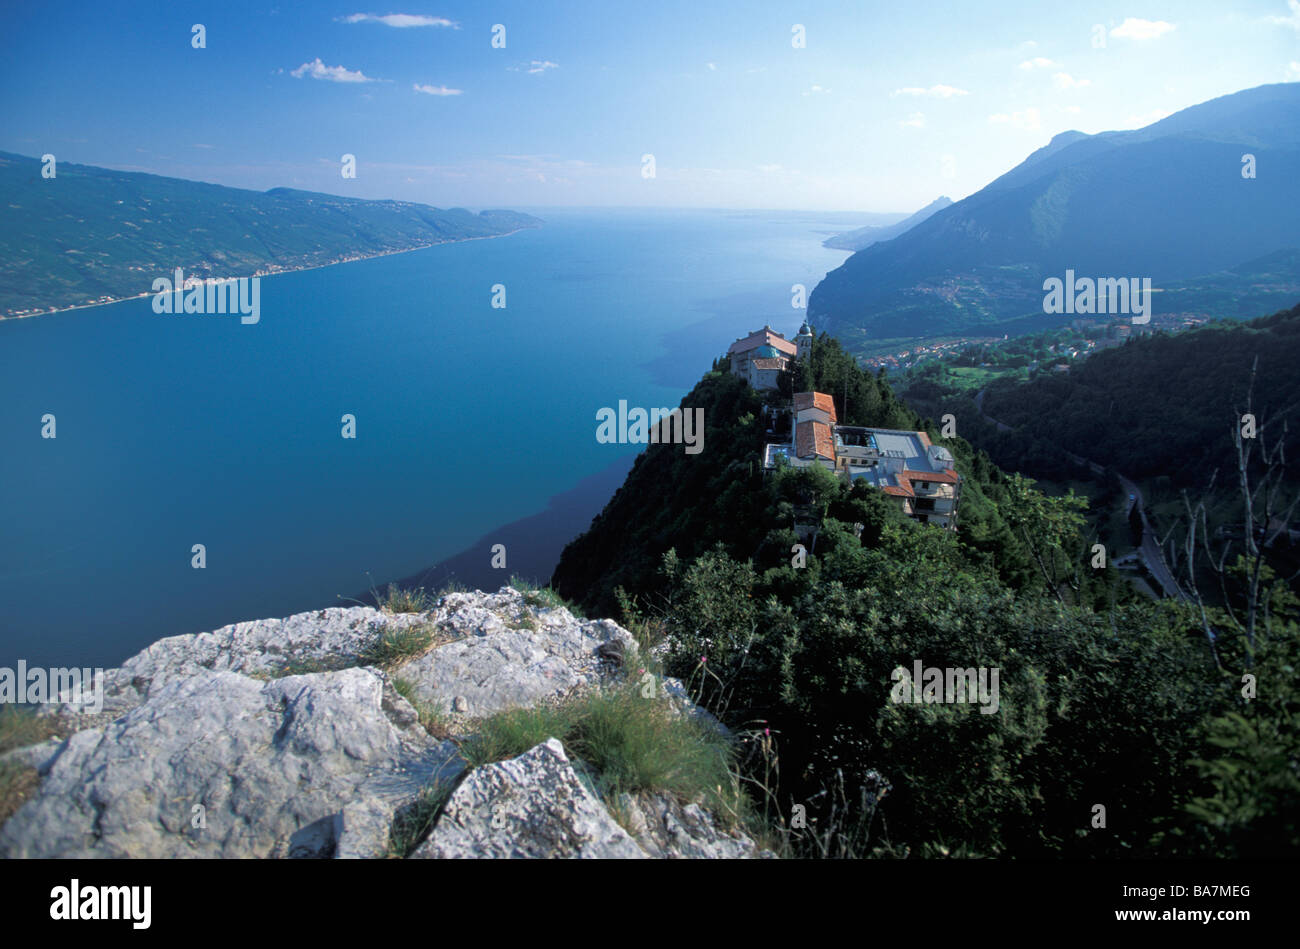 Pilgrimage church Madonna di Monte Castello, Tignale, Lake Garda, Lombardy, Italy Stock Photo